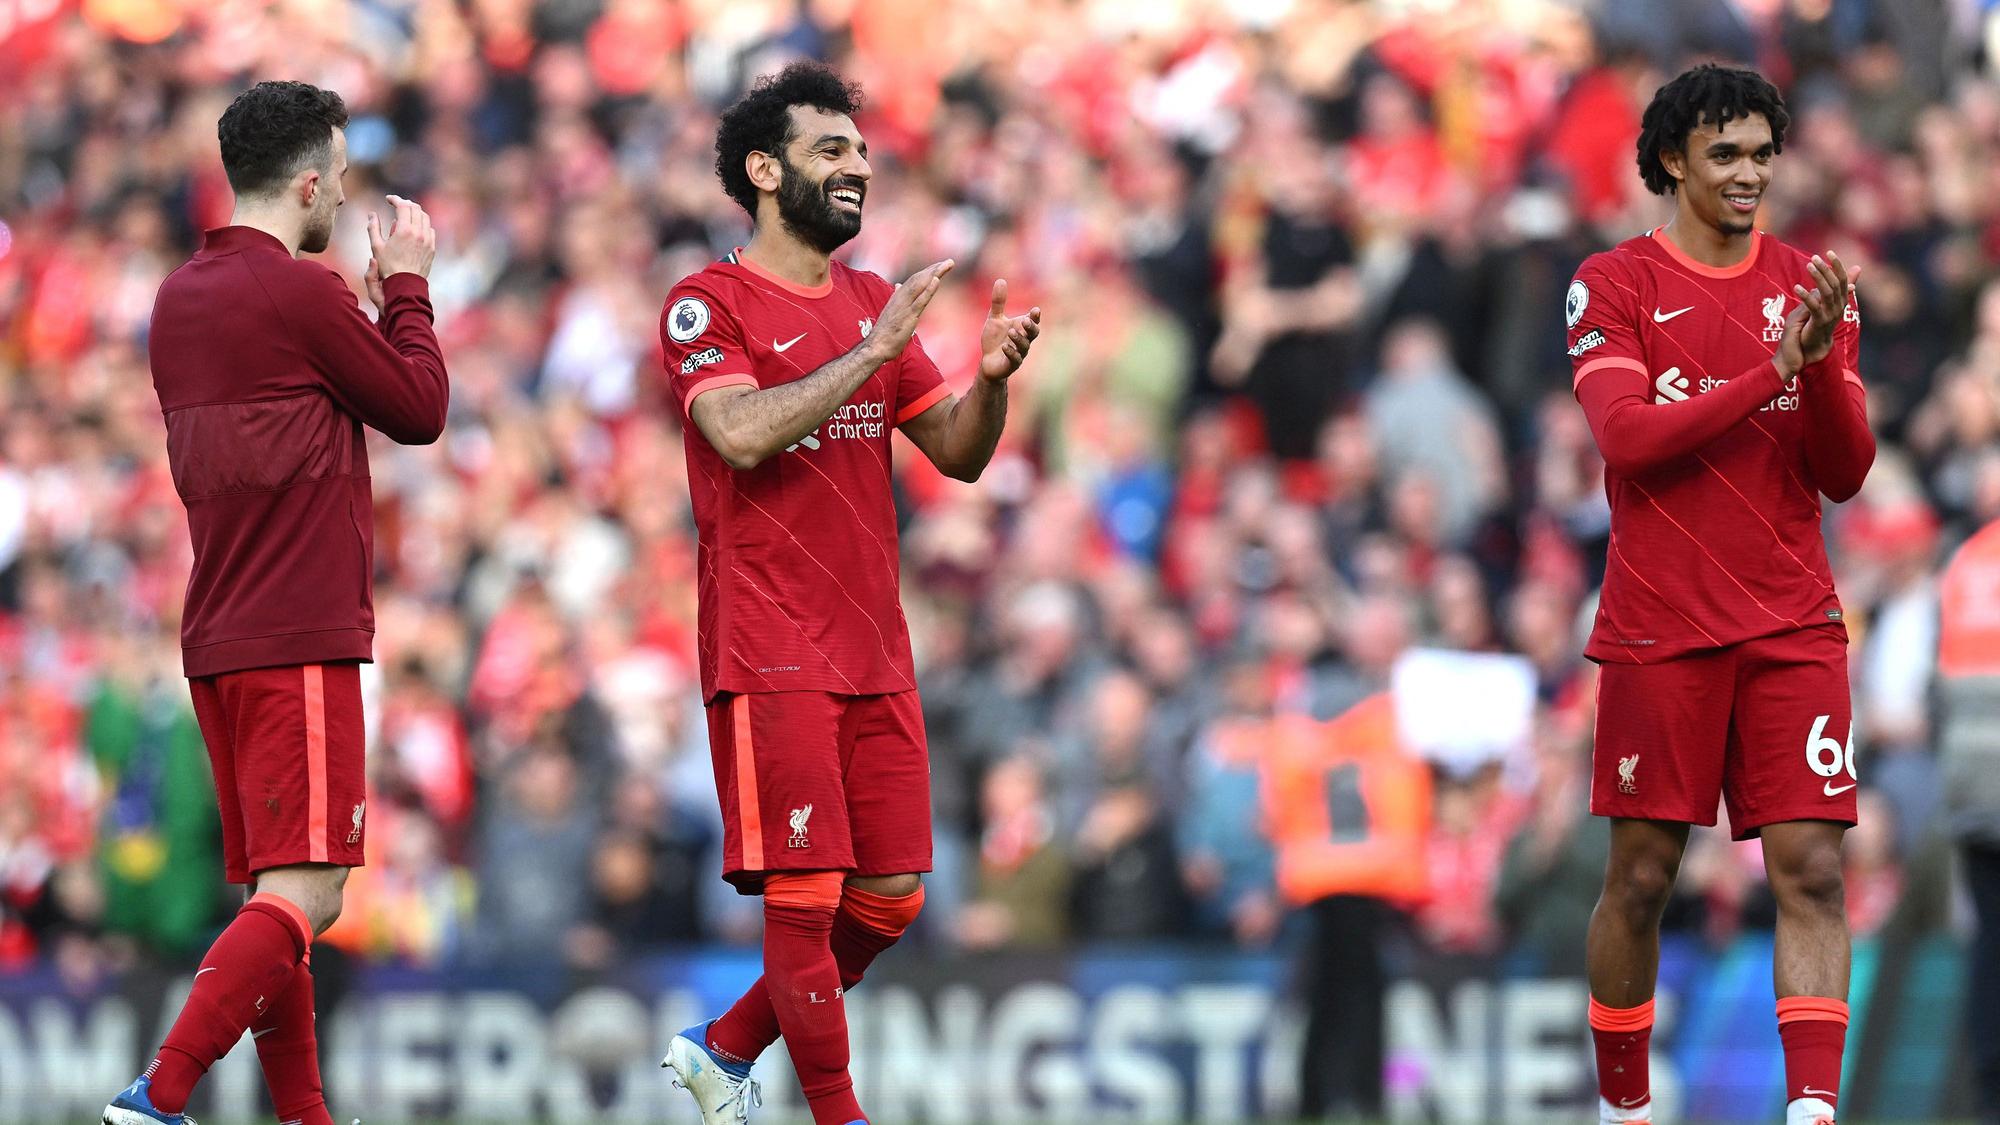 El Liverpool quiere reforzar su poder adquisitivo con un gran patrocinio | AFP